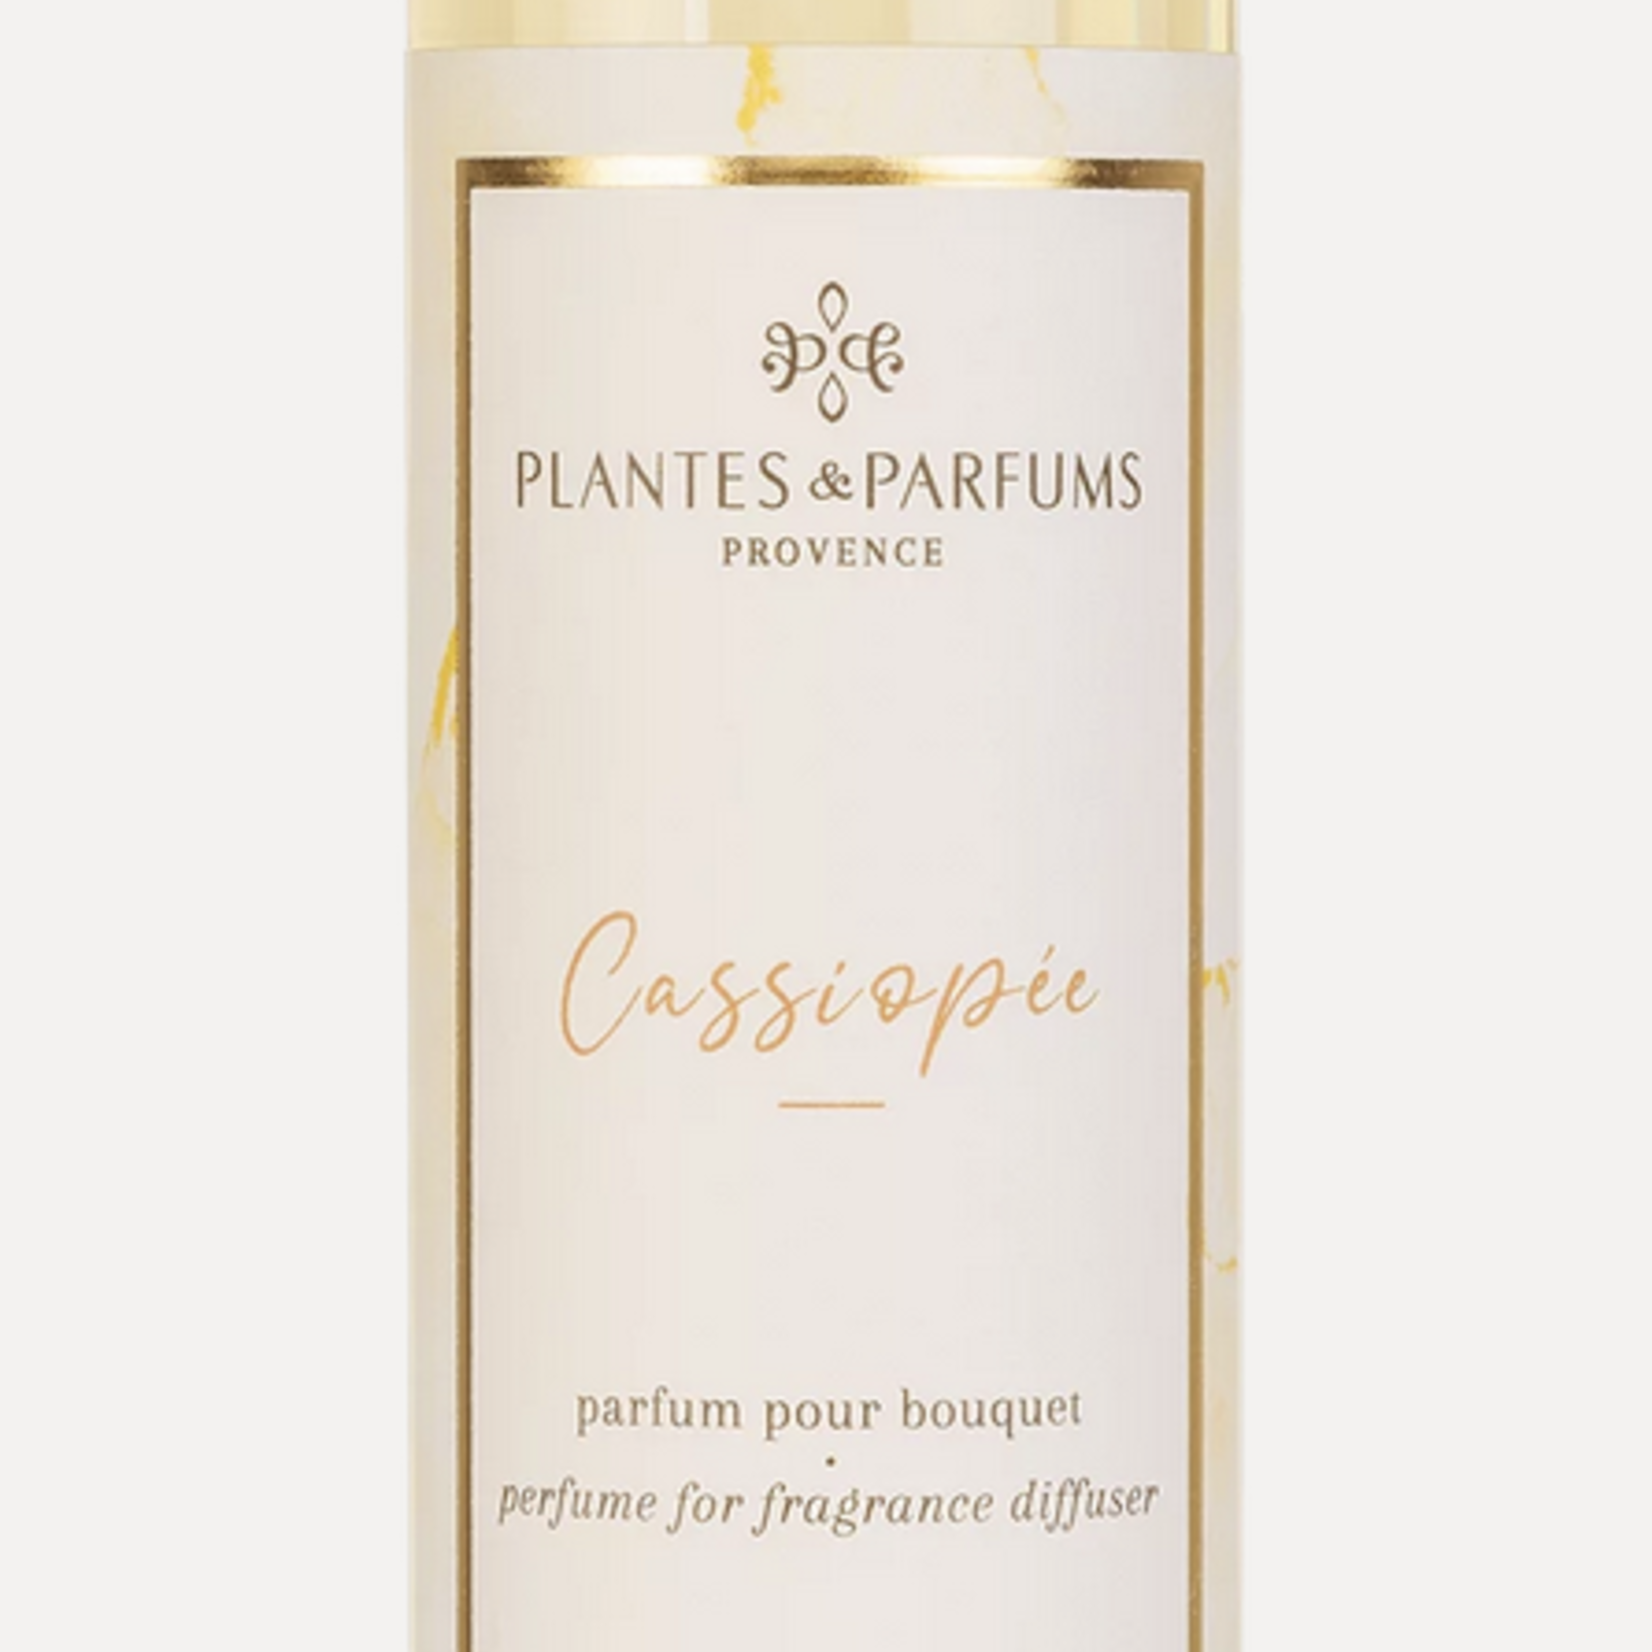 PLANTES & PARFUMS Parfum pour Bouquet 200ml CASSIOPEE 090815